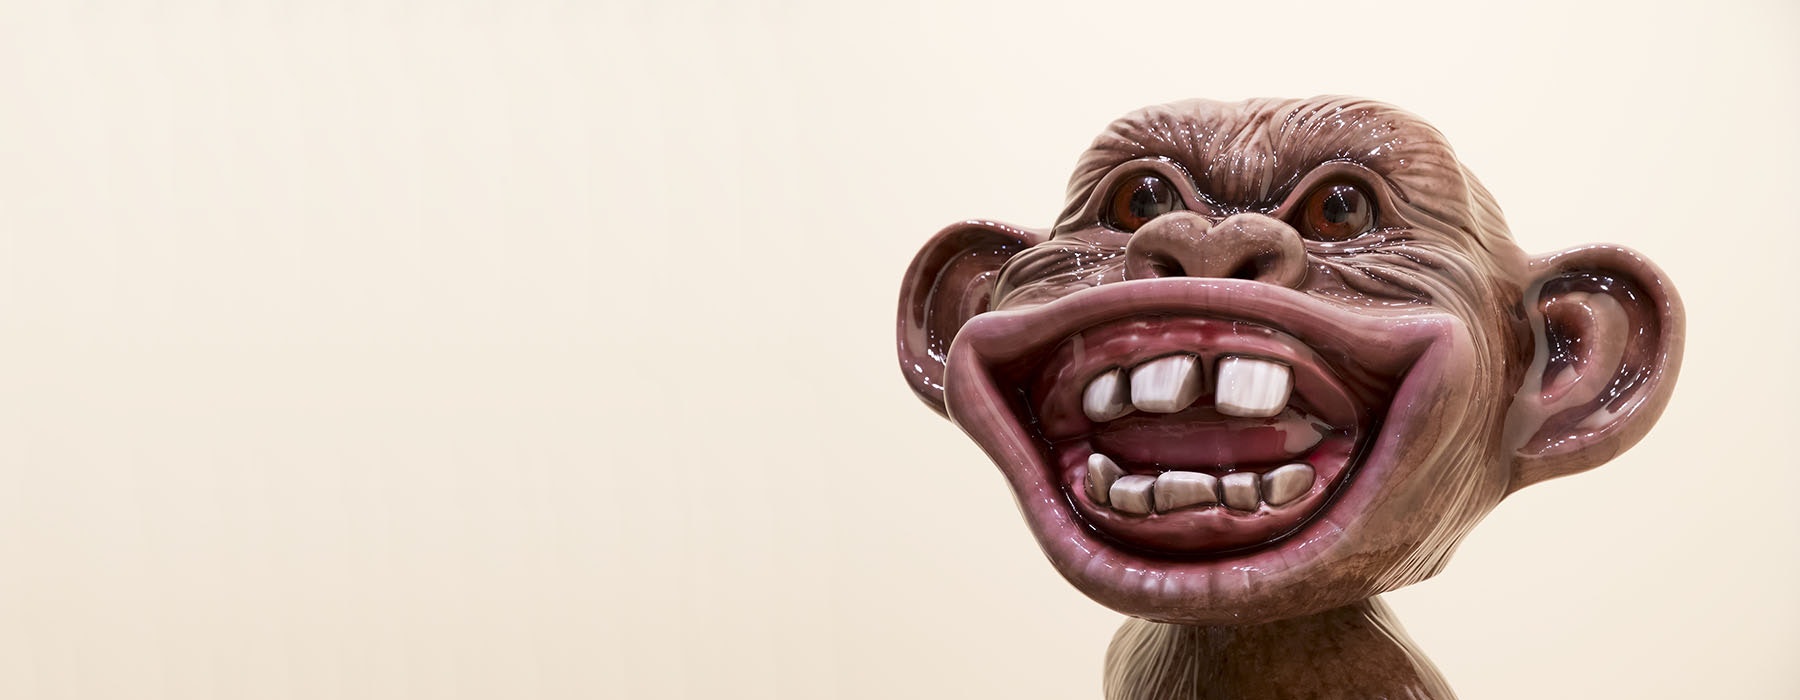 Shiny smiling monkey face